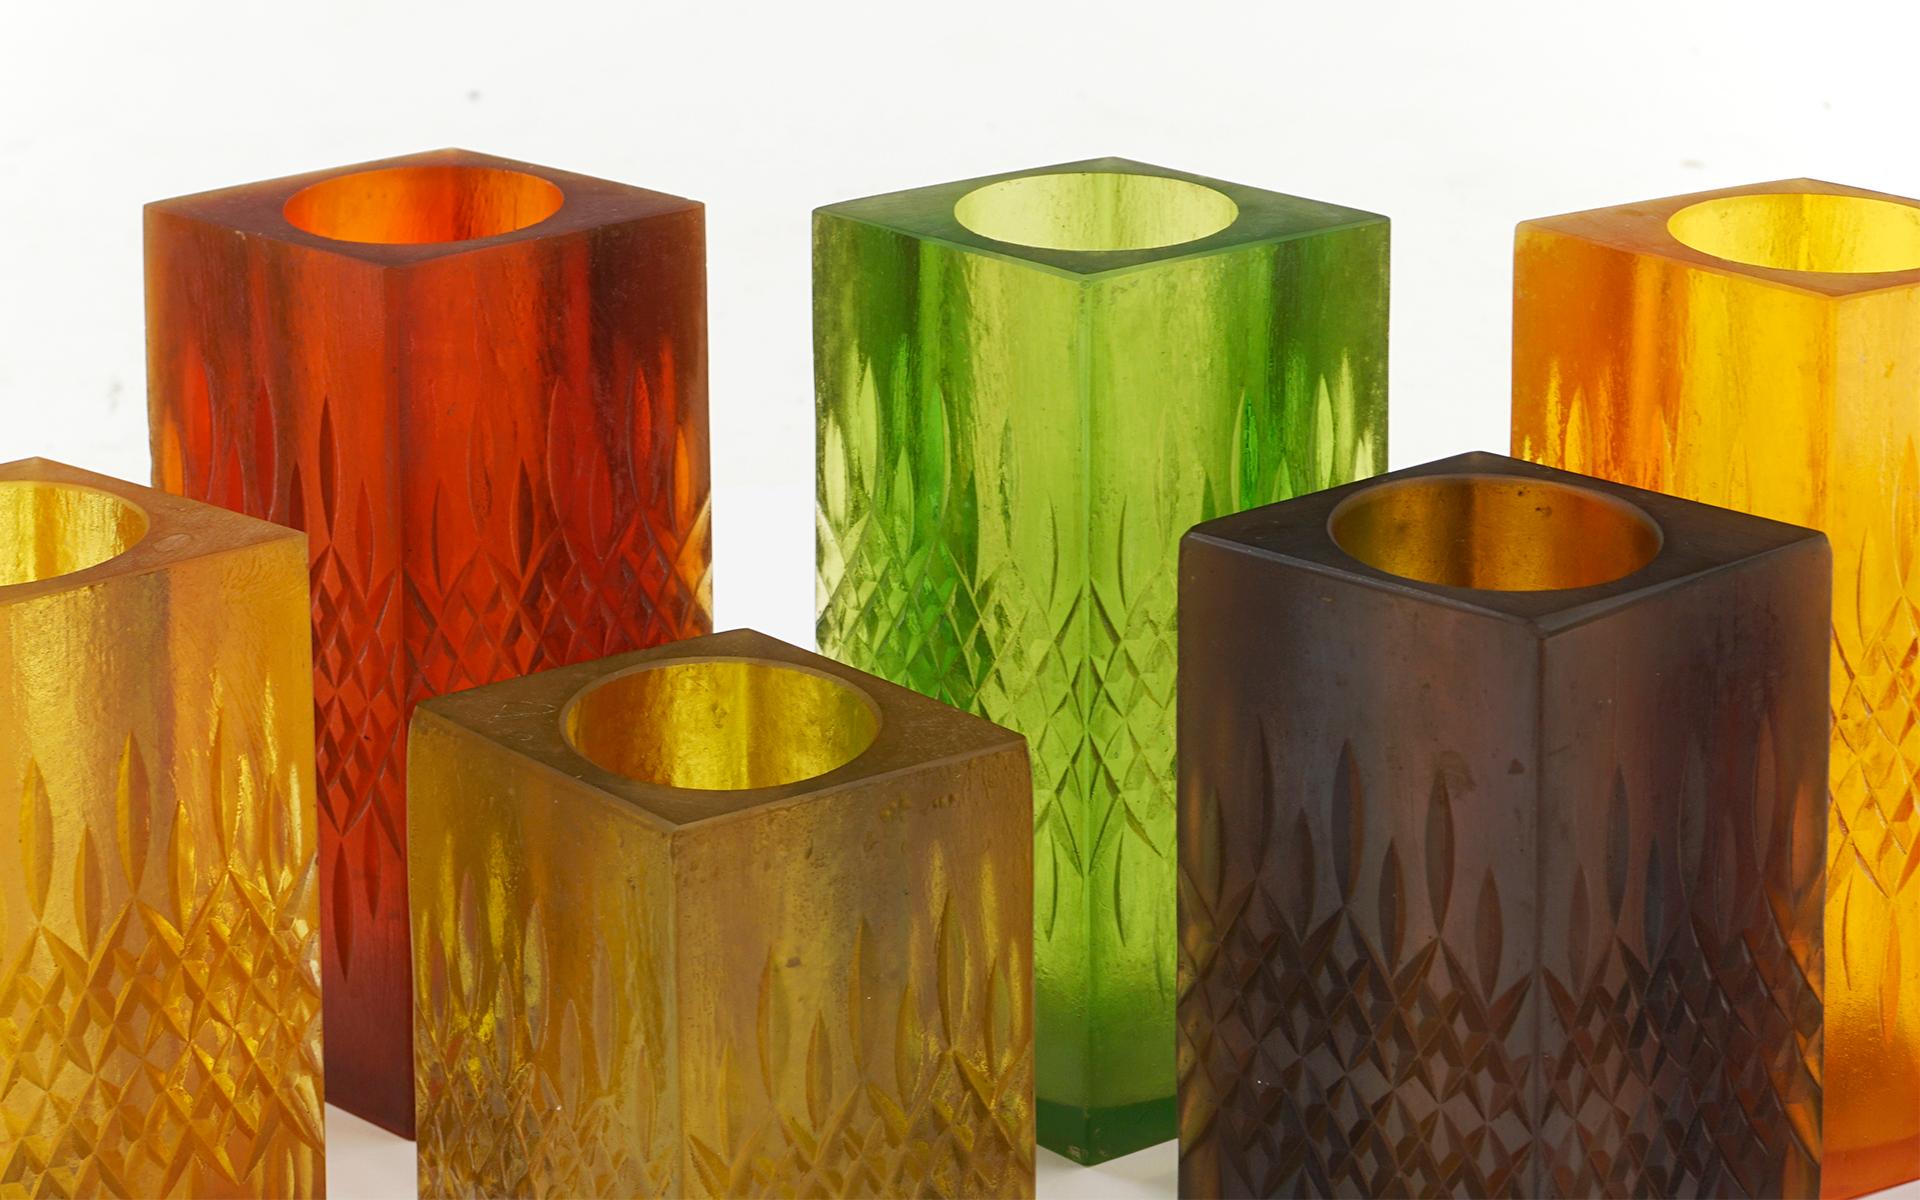 Set of Nine Candleholder / Vases by Sascha Brastoff, Multi-Color Resin, Signed 2